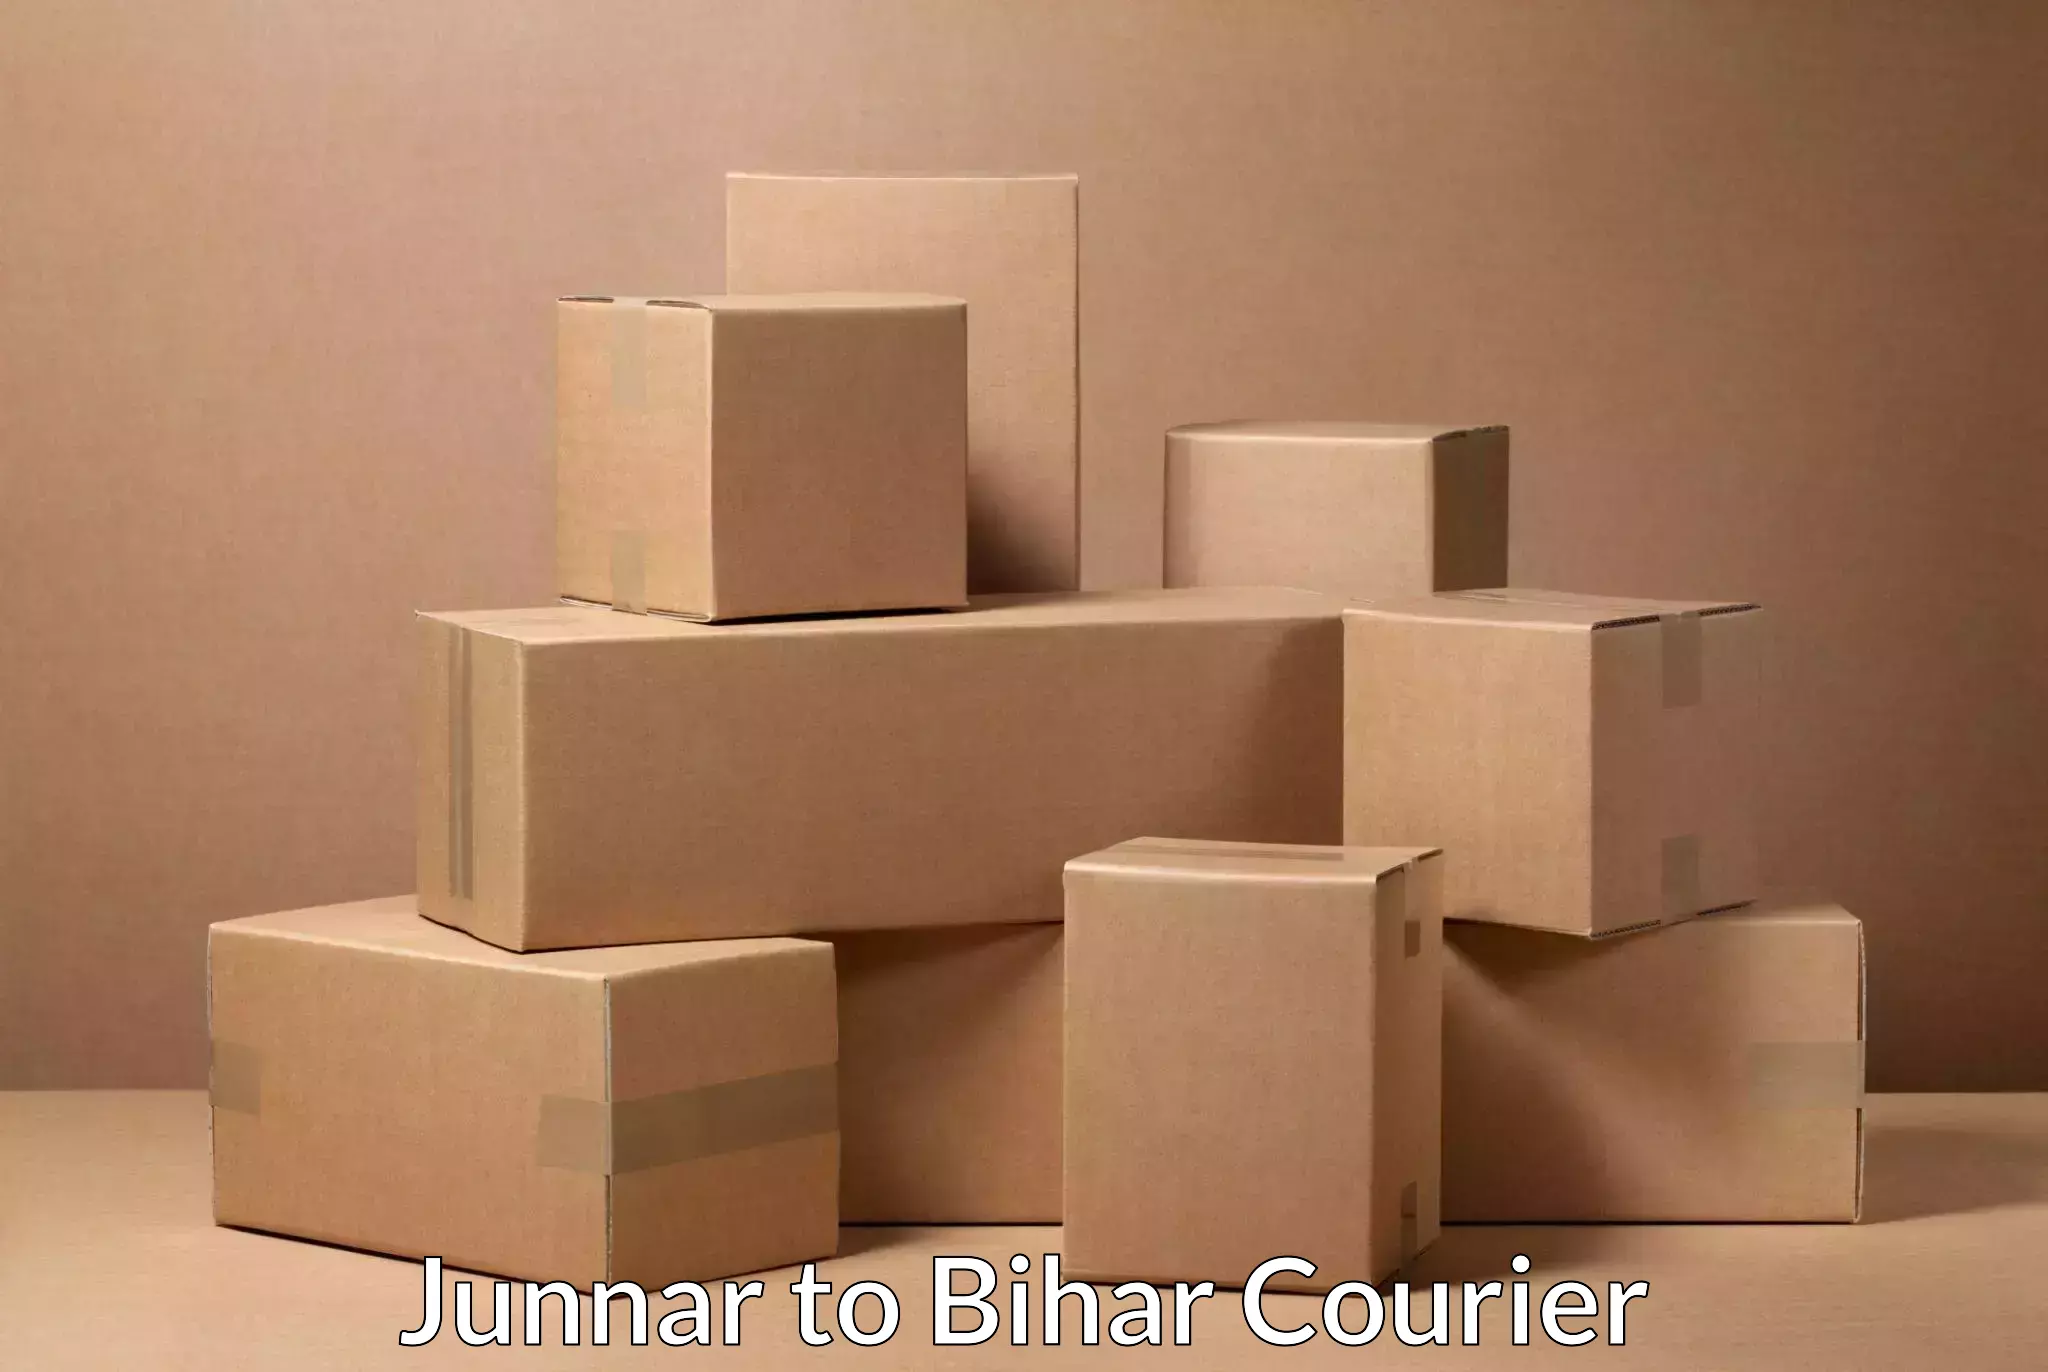 Customer-centric shipping in Junnar to Hasanpura